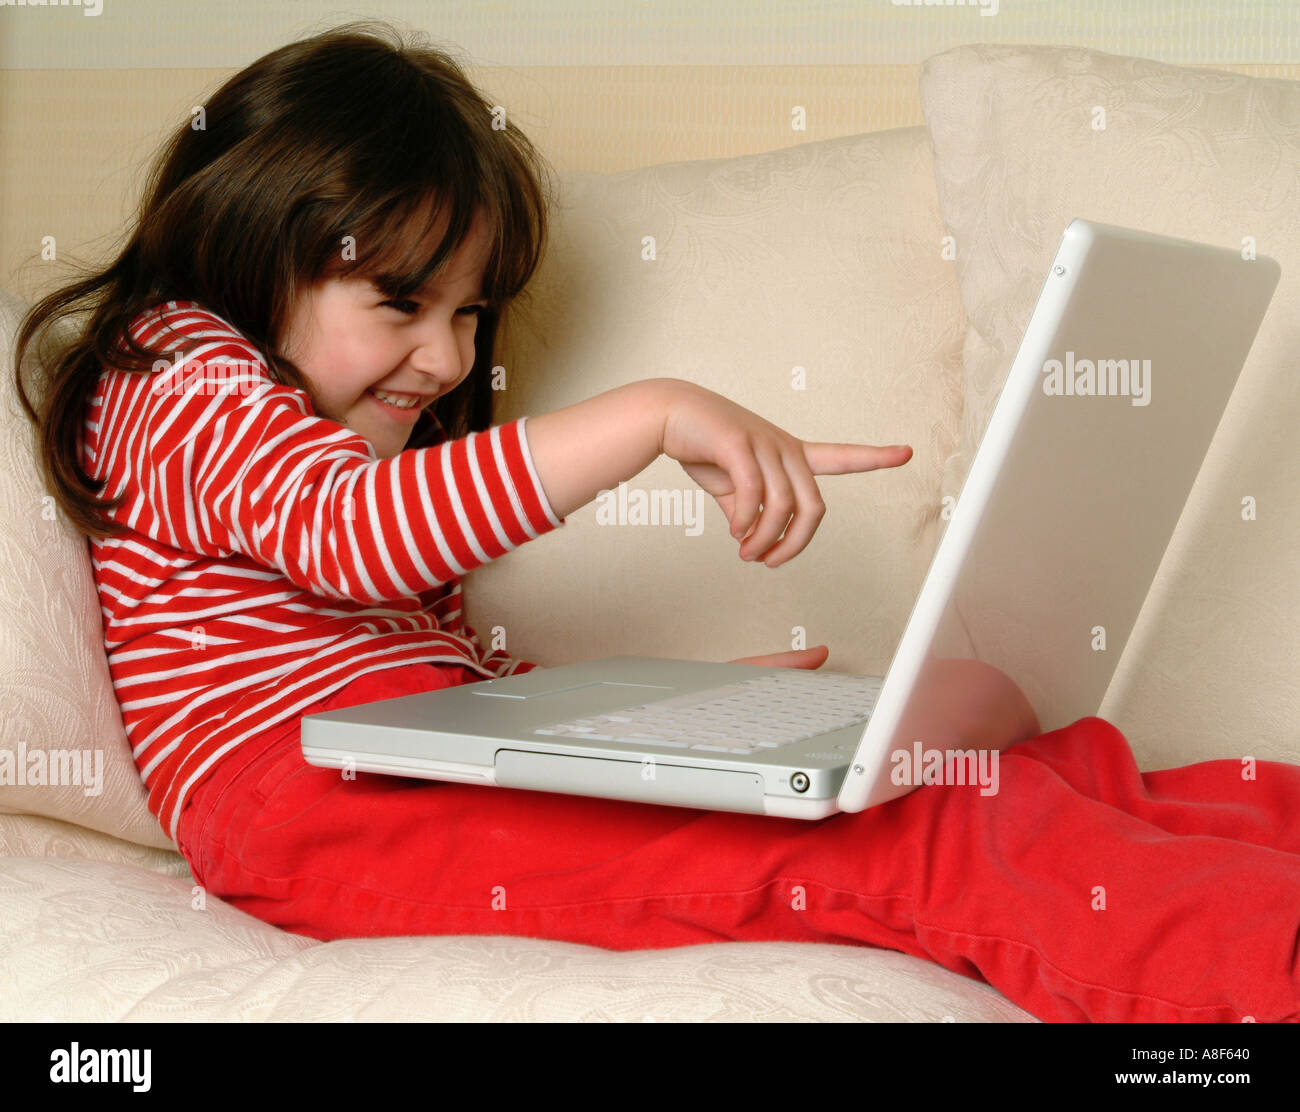 6 anno vecchia ragazza con un computer portatile Foto Stock